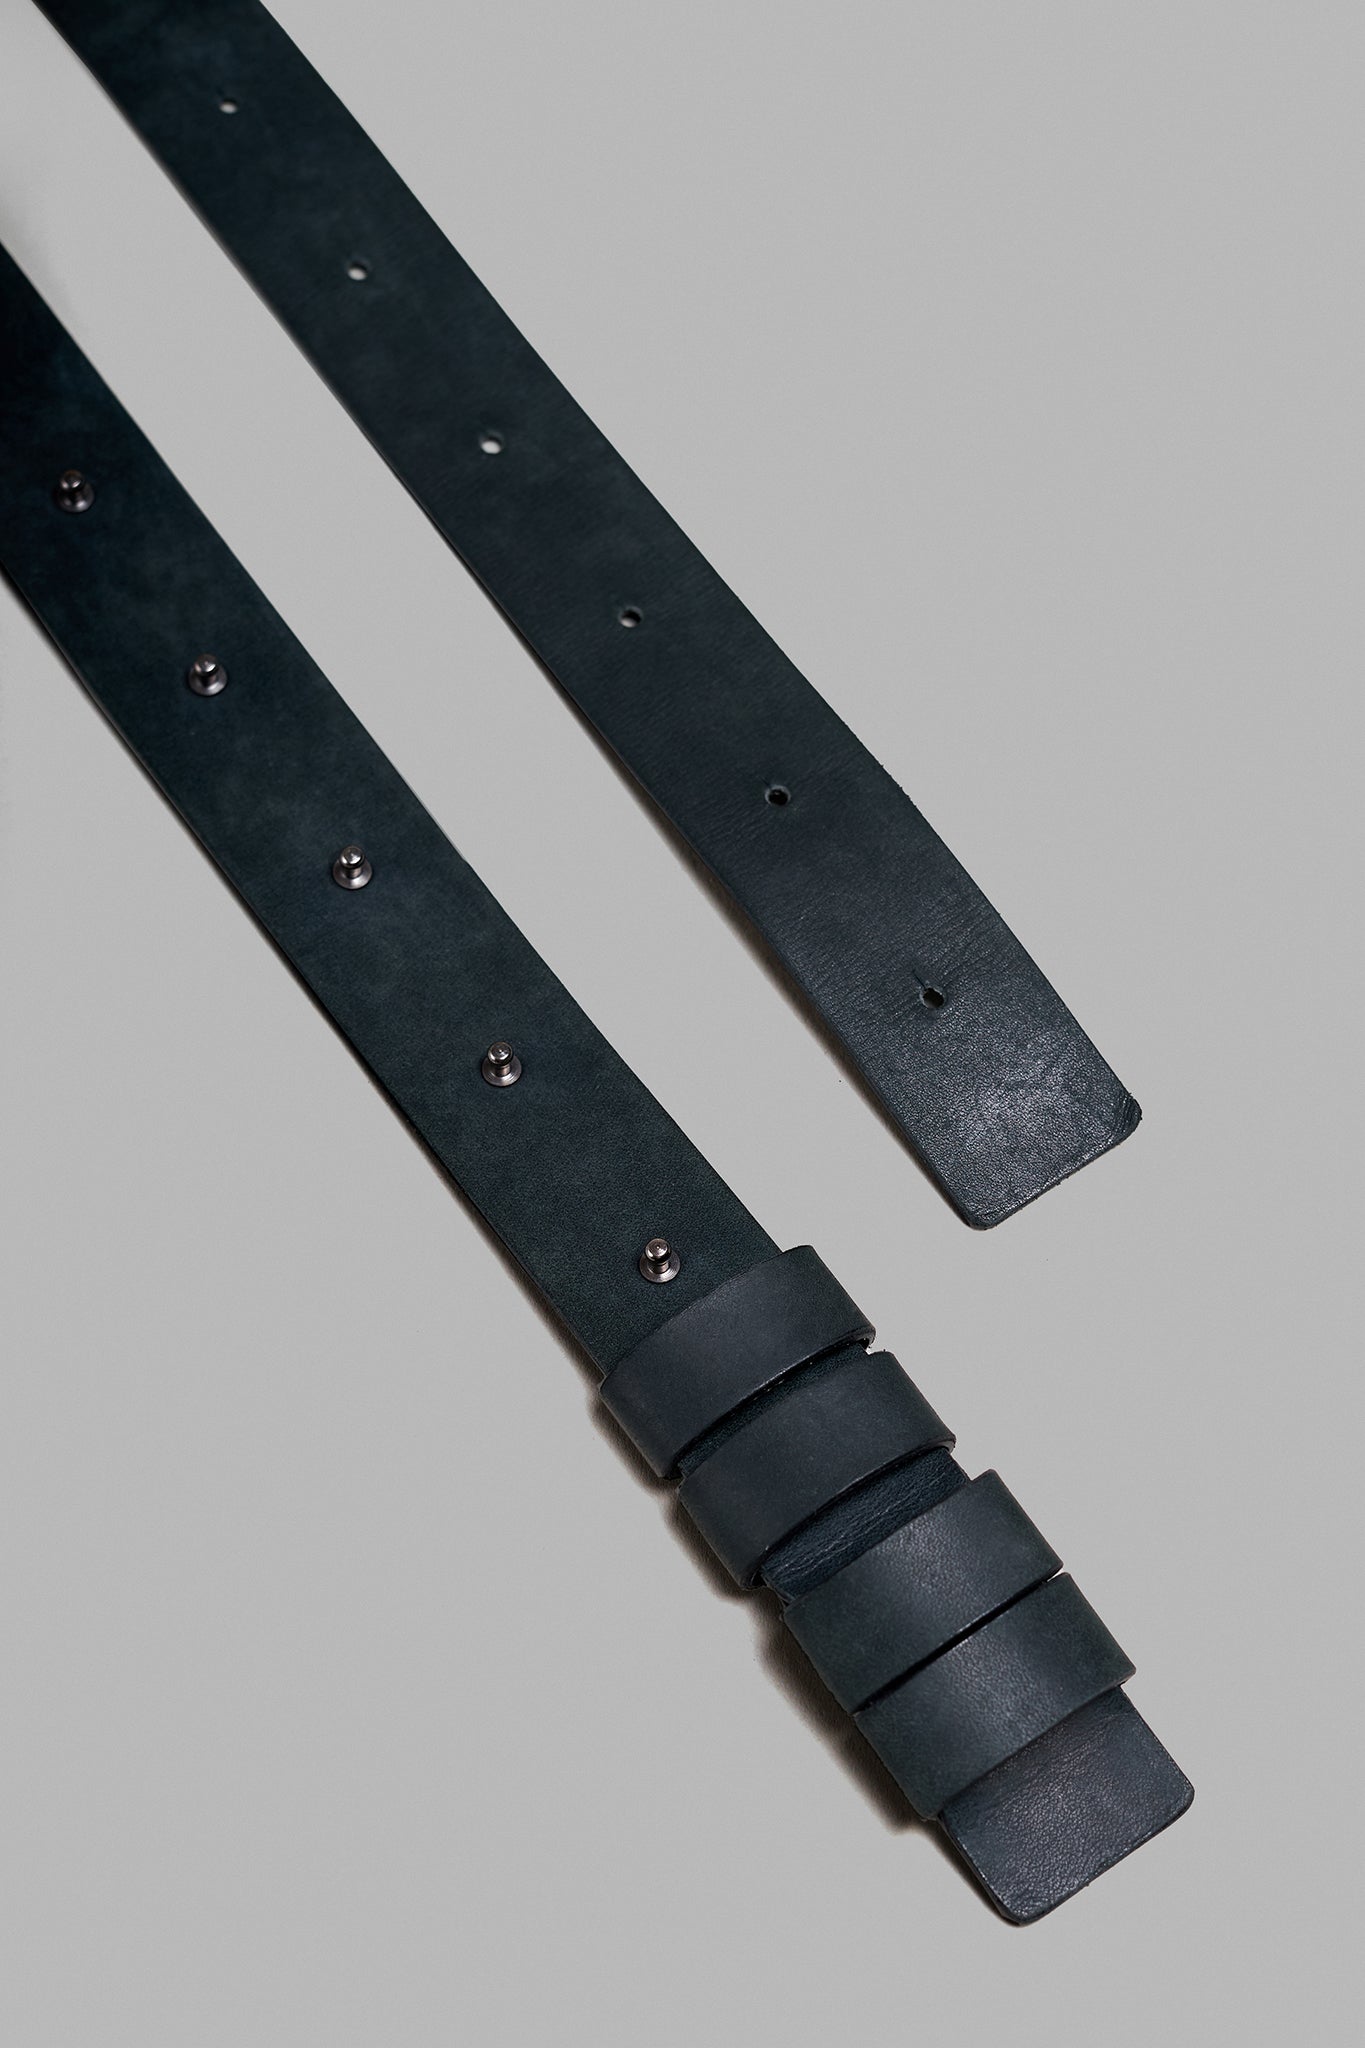 Leather Button Stud Belt - Old Black